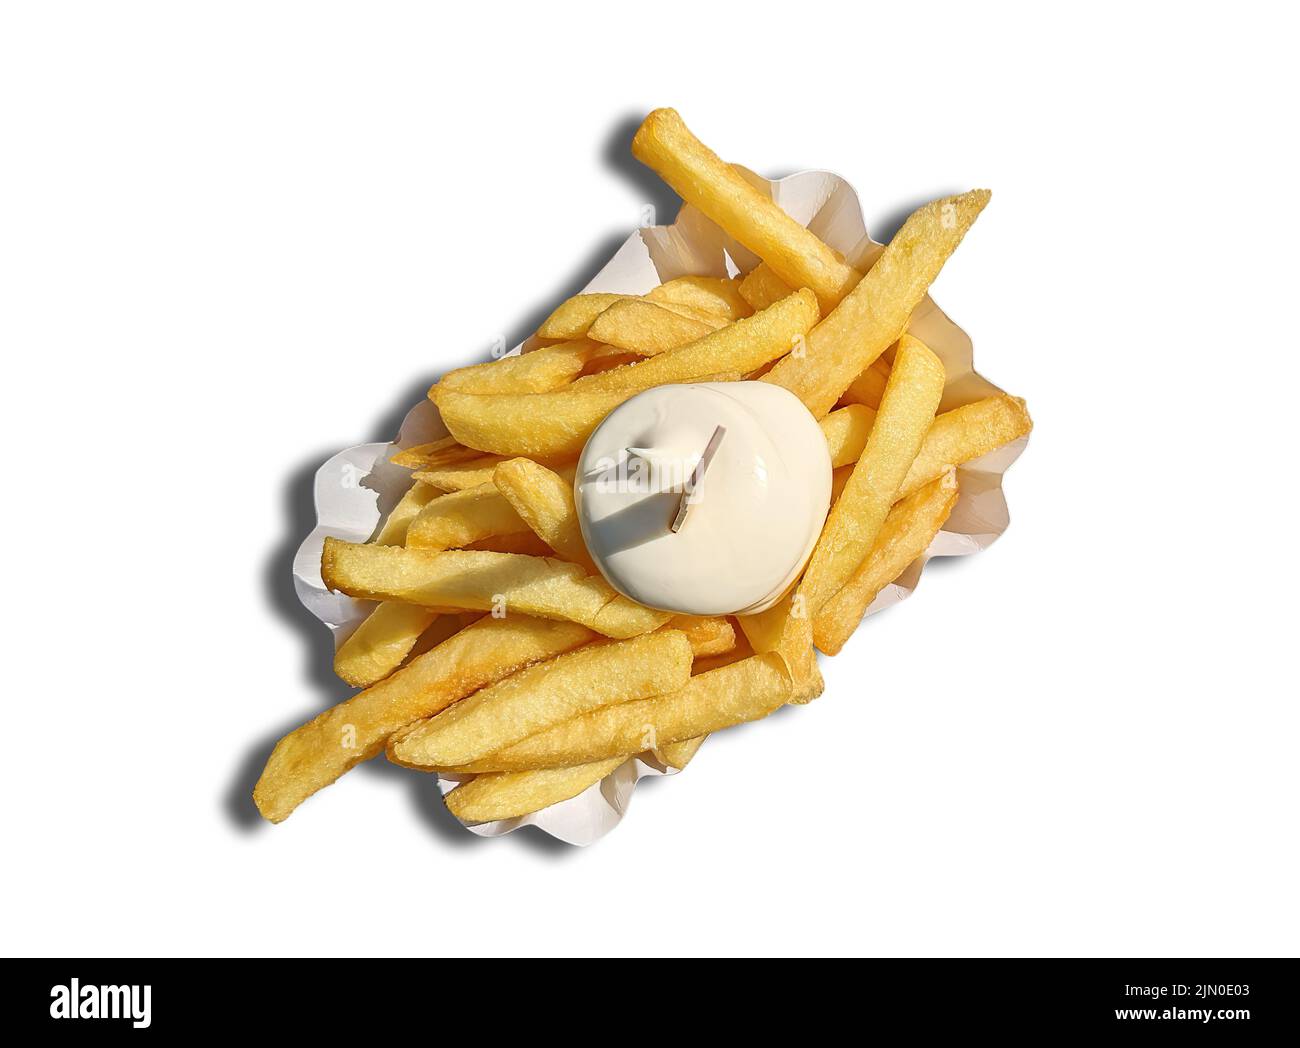 vue de haut en bas de la portion de frites avec mayonnaise sur une assiette en papier isolée sur fond blanc Banque D'Images